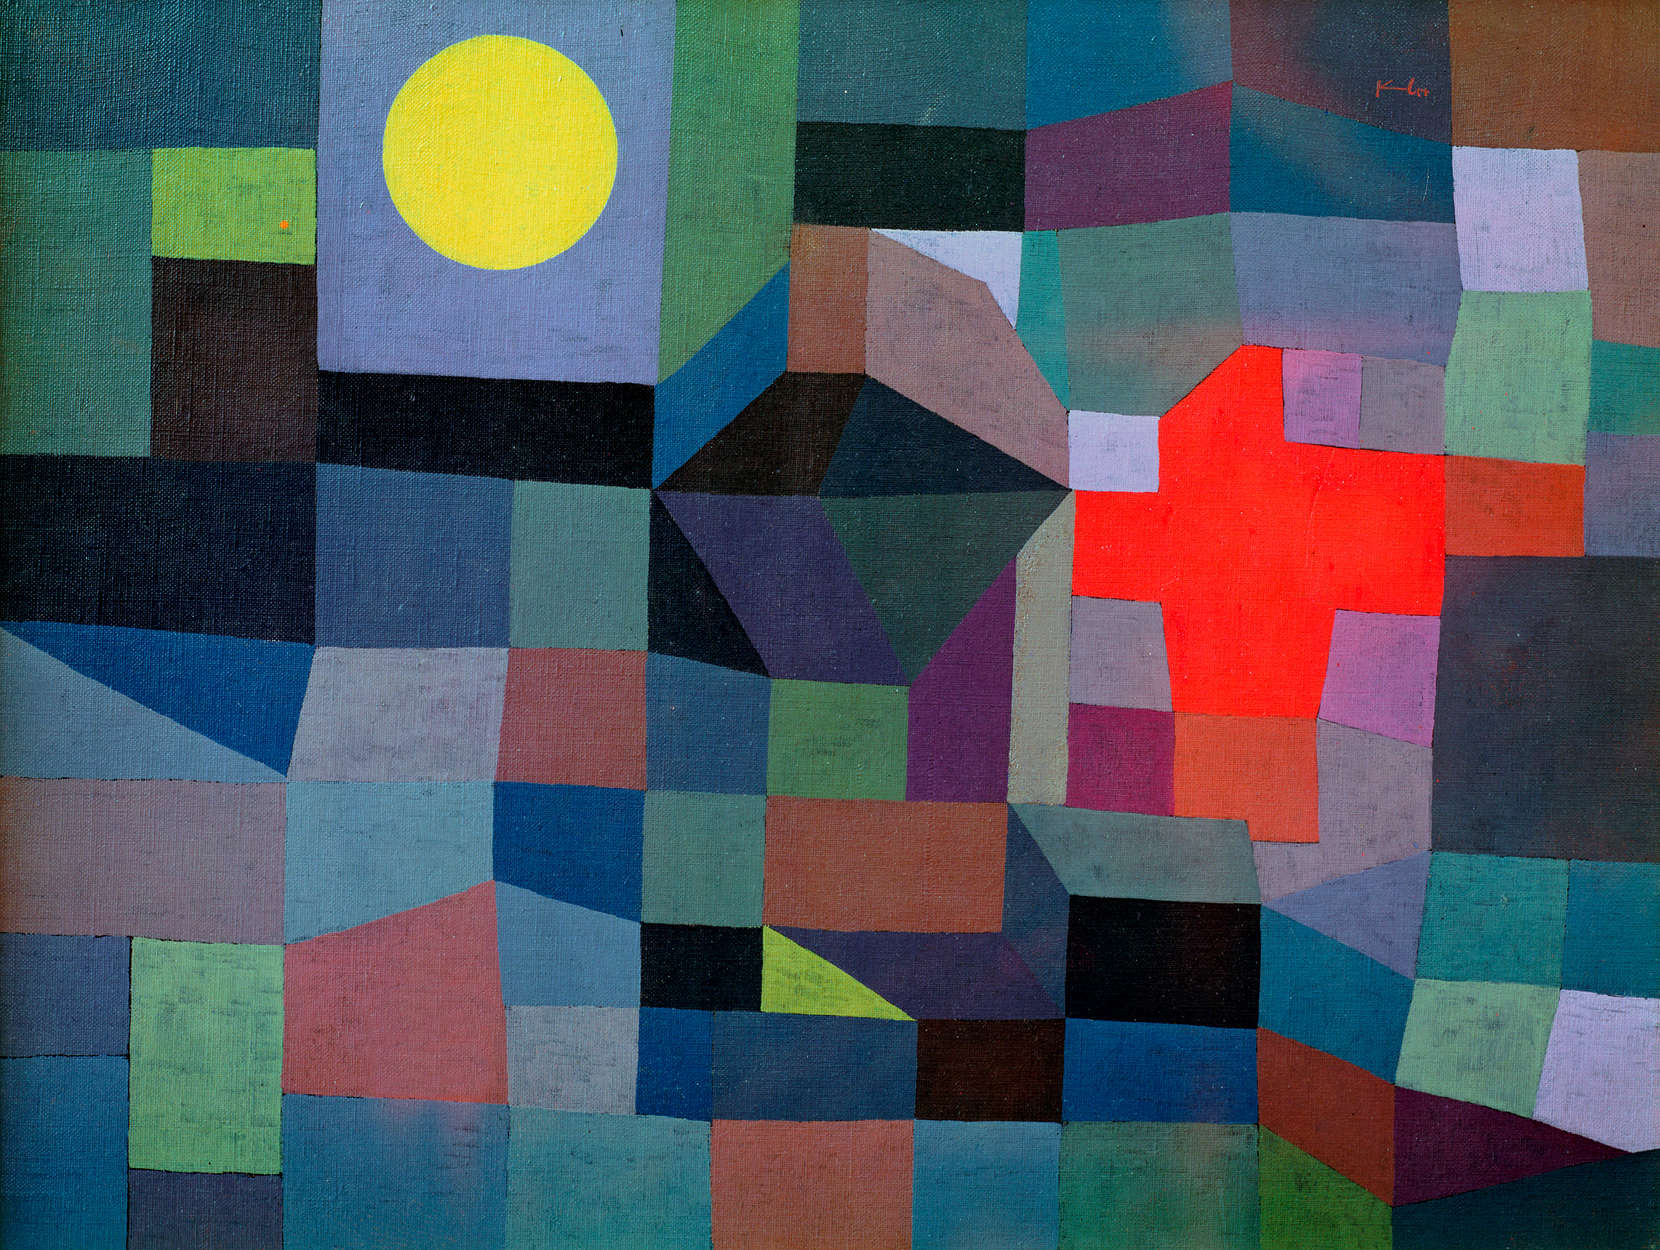             Mural "Fuego en la luna llena" de Paul Klee
        